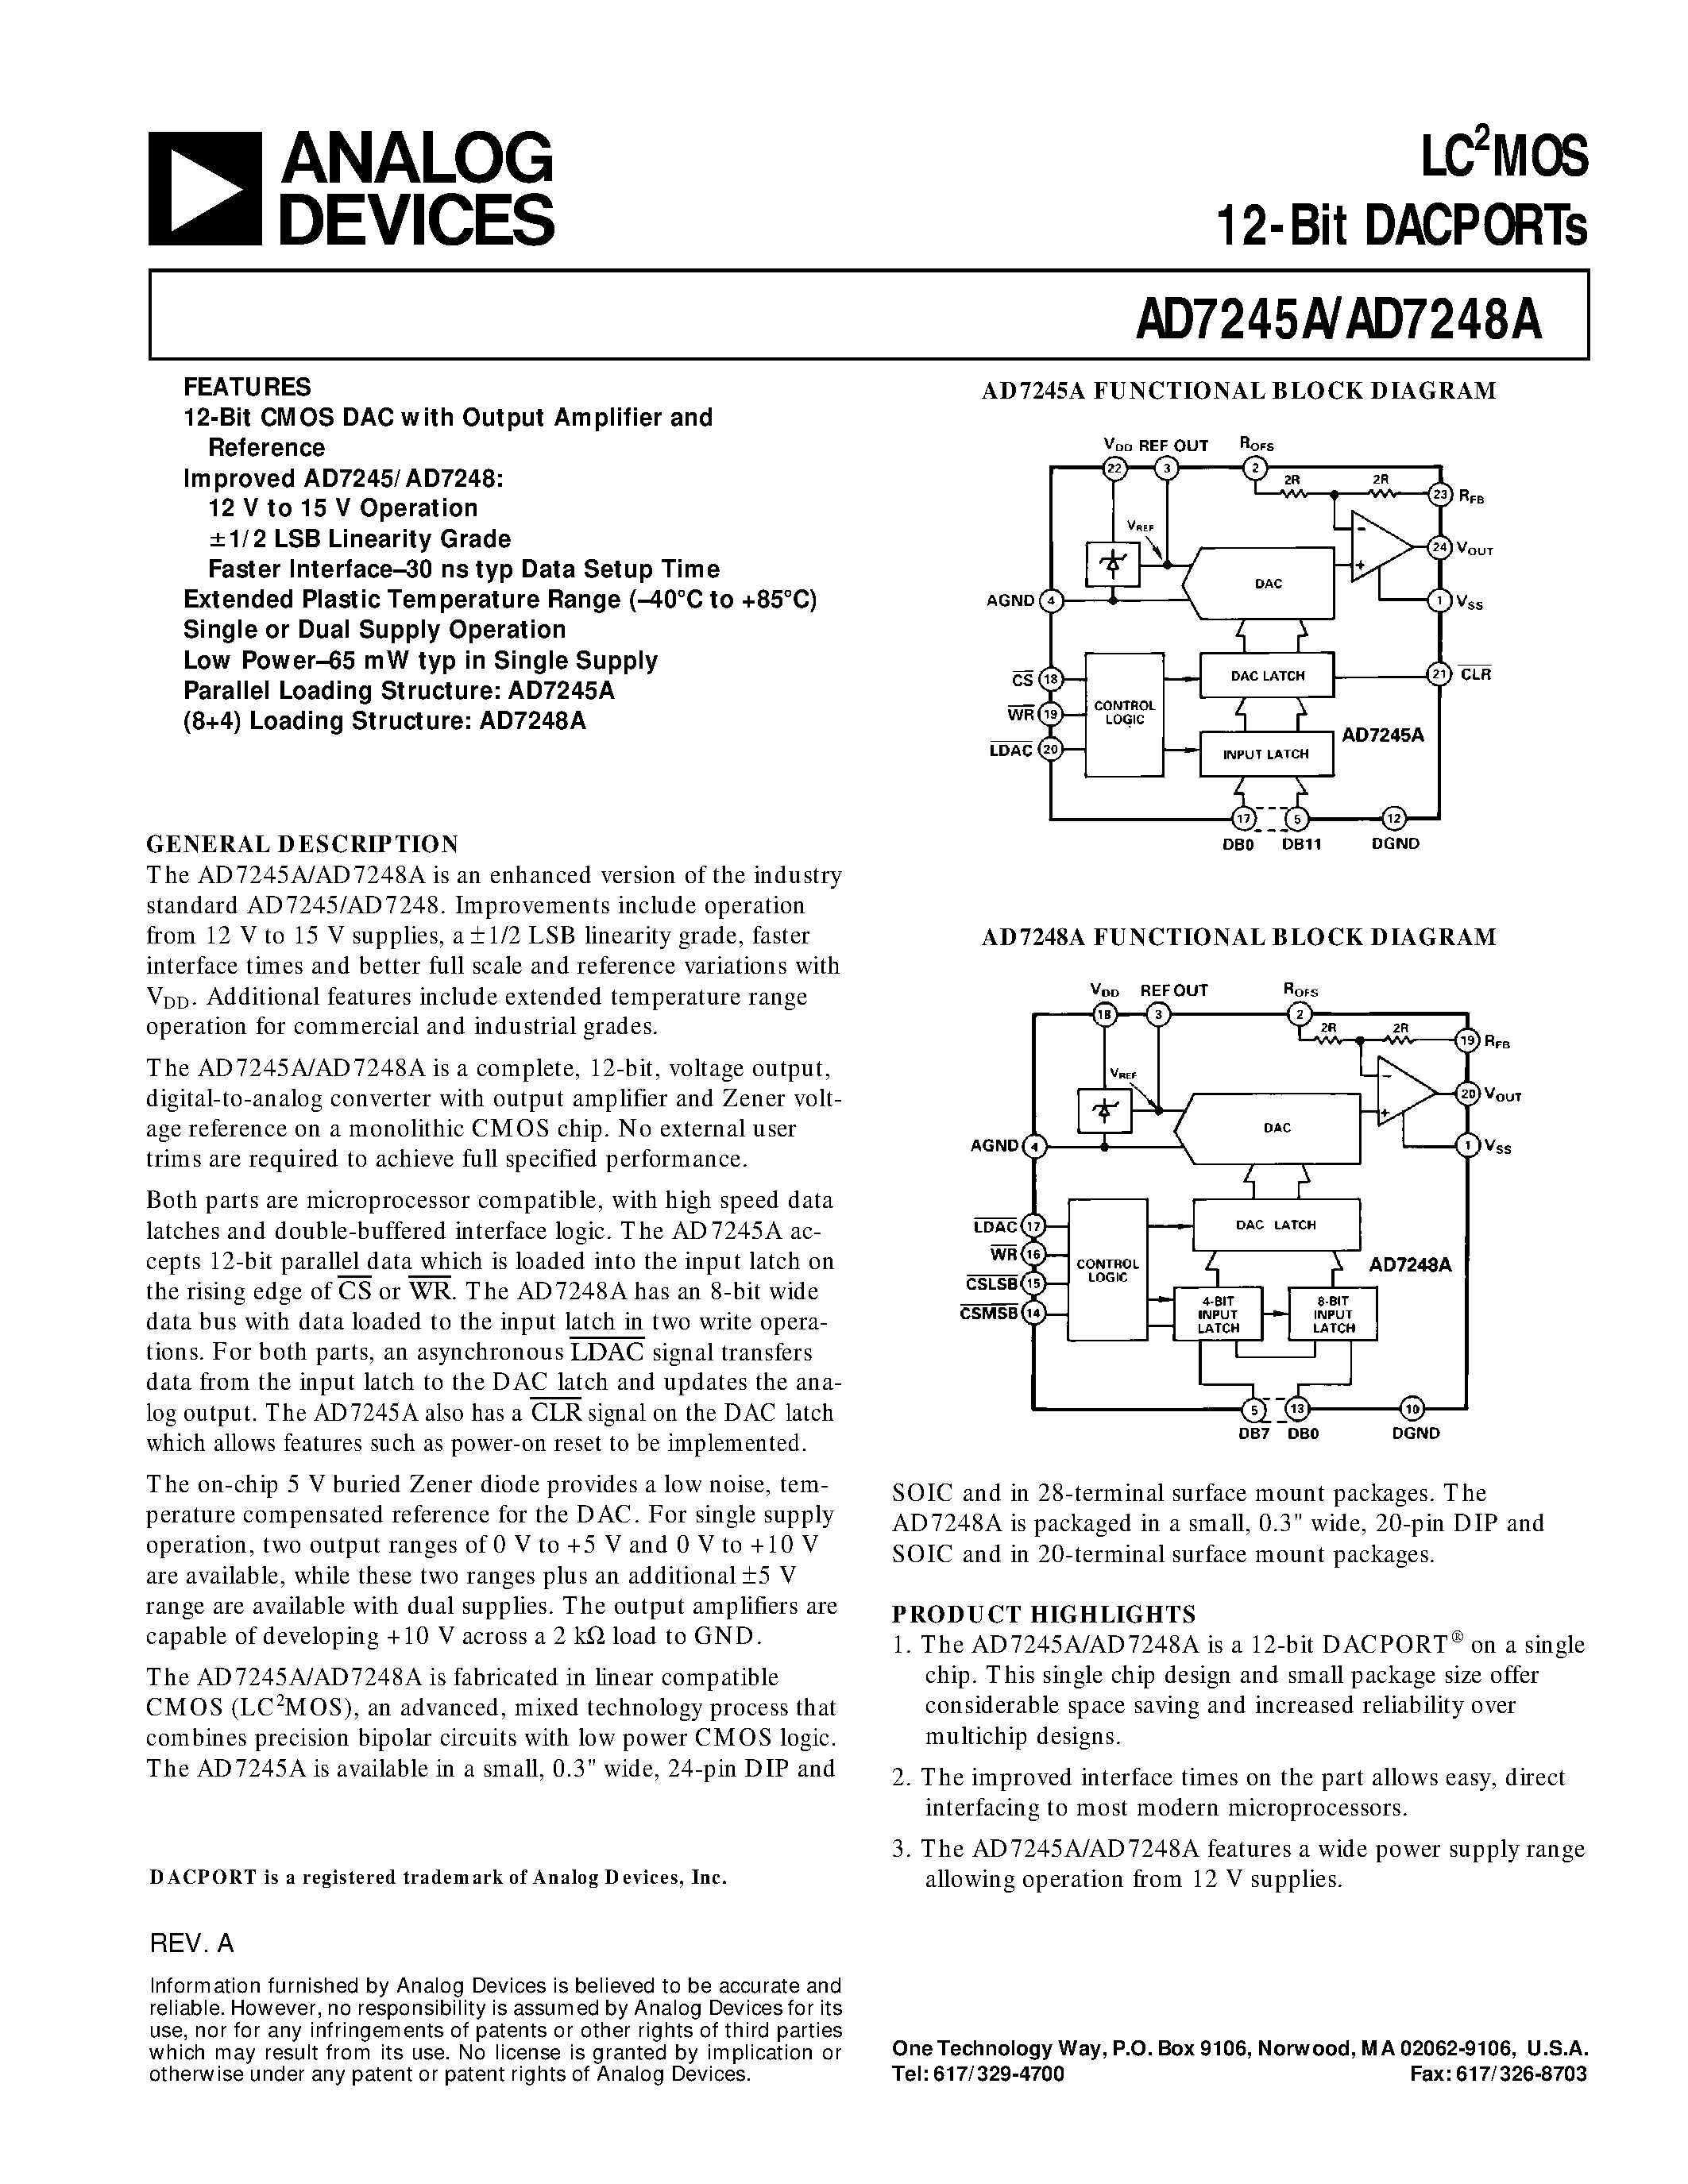 Datasheet AD7248AAN - LC2MOS 12-Bit DACPORTs page 1